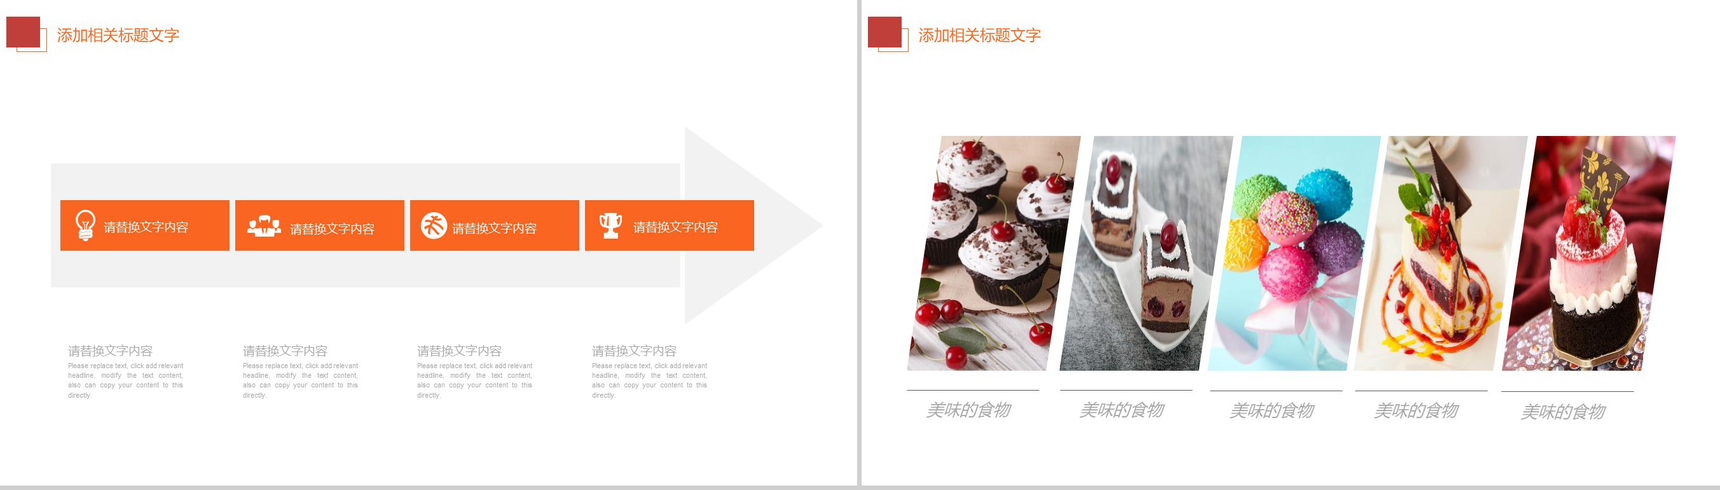 蛋糕甜点主题品牌推广工作汇报PPT模板-10